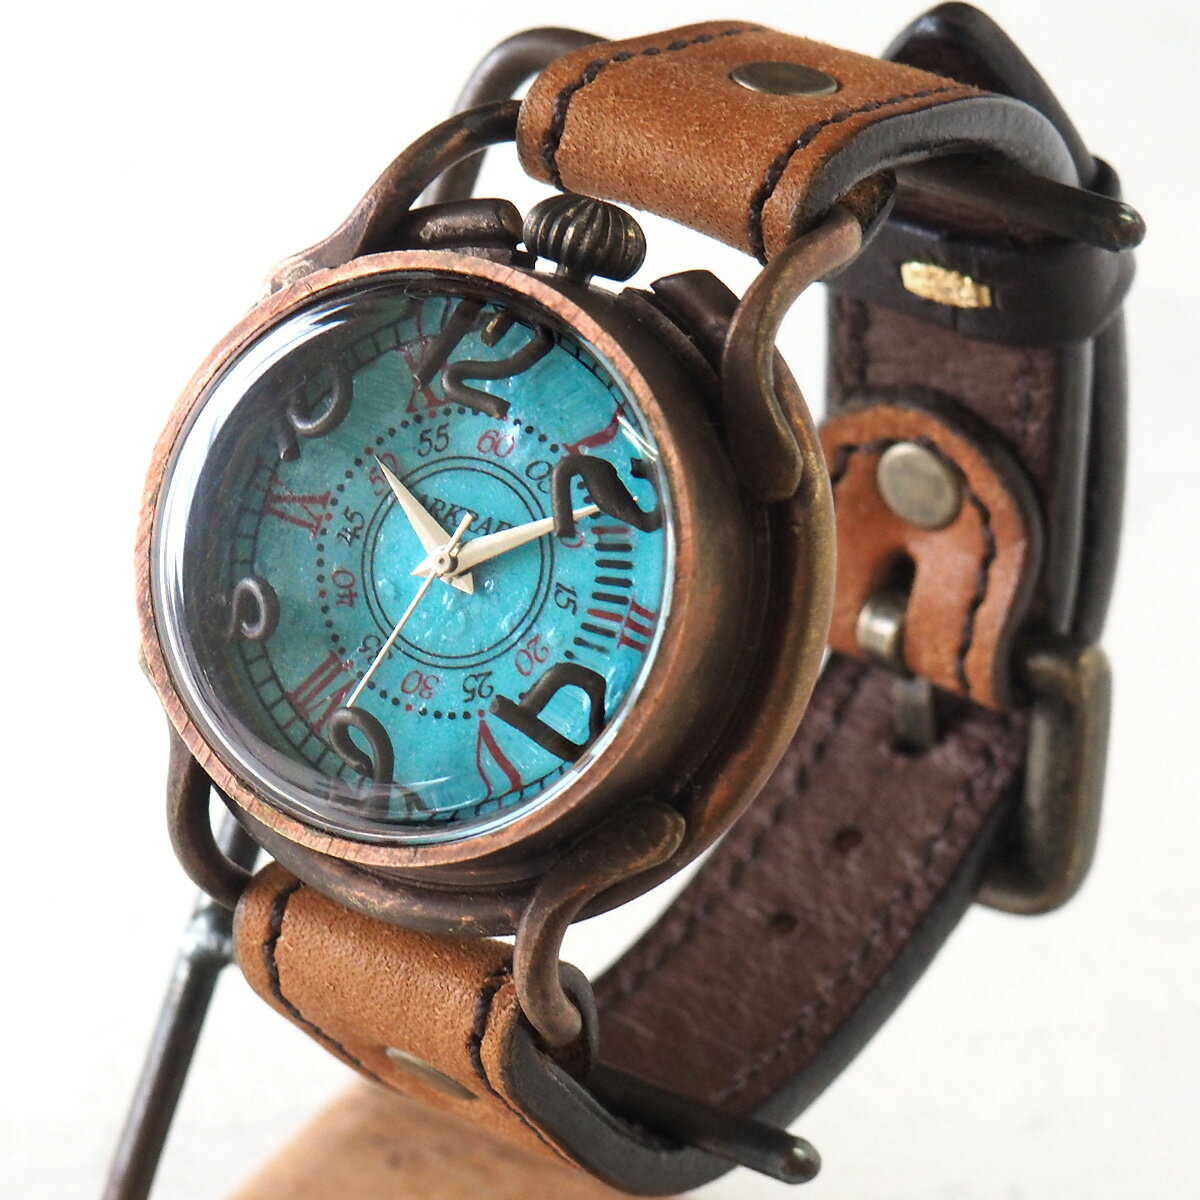 【あす楽】ARKRAFT(アークラフト) 手作り腕時計“PATRICE OCEAN” プレミアムストラップ プエブロ キャメル [AR-C-001-P-CAMEL] 新木秀和 ハンドメイド ウォッチ ハンドメイド腕時計 本革ベルト アンティーク調 真鍮 ターコイズブルー アナログ 日本製 国産